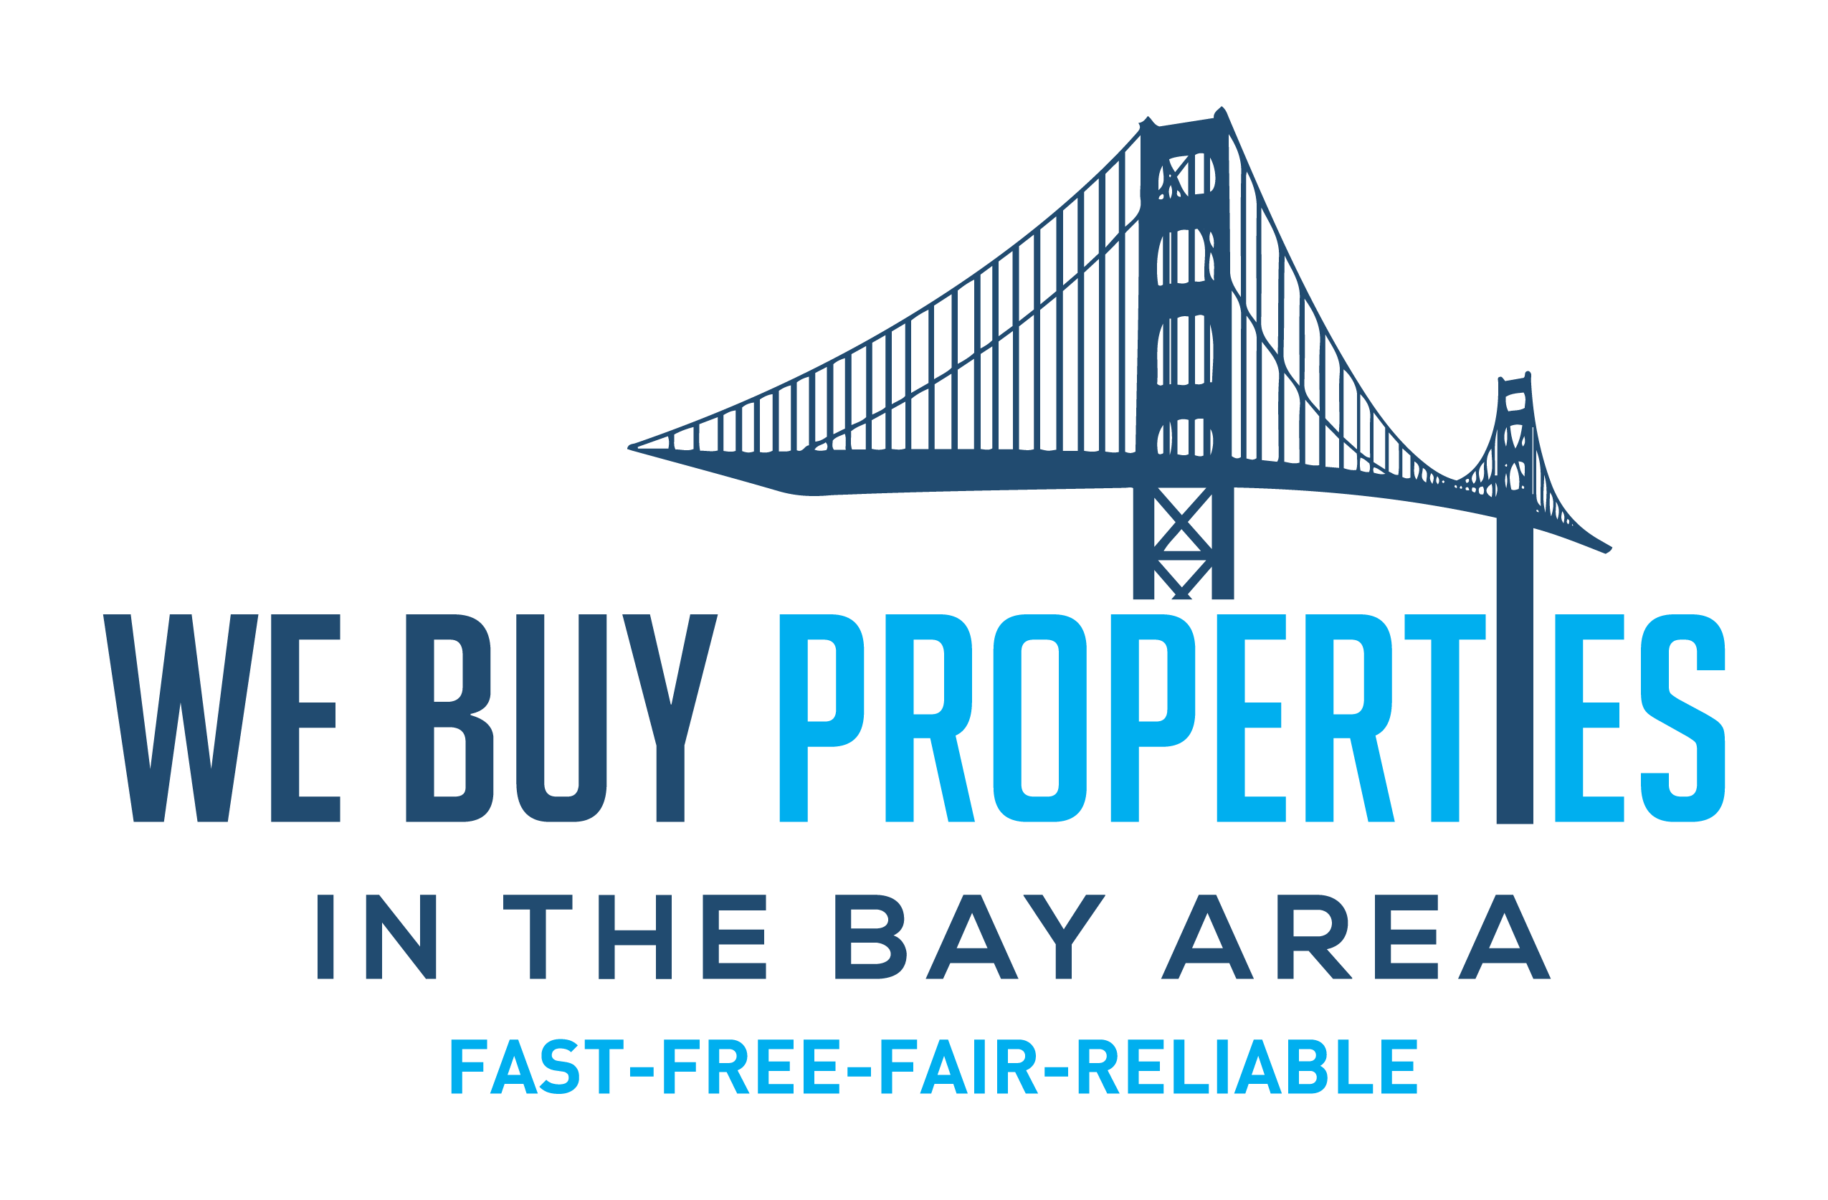 We Buy Properties in The Bay Area logo